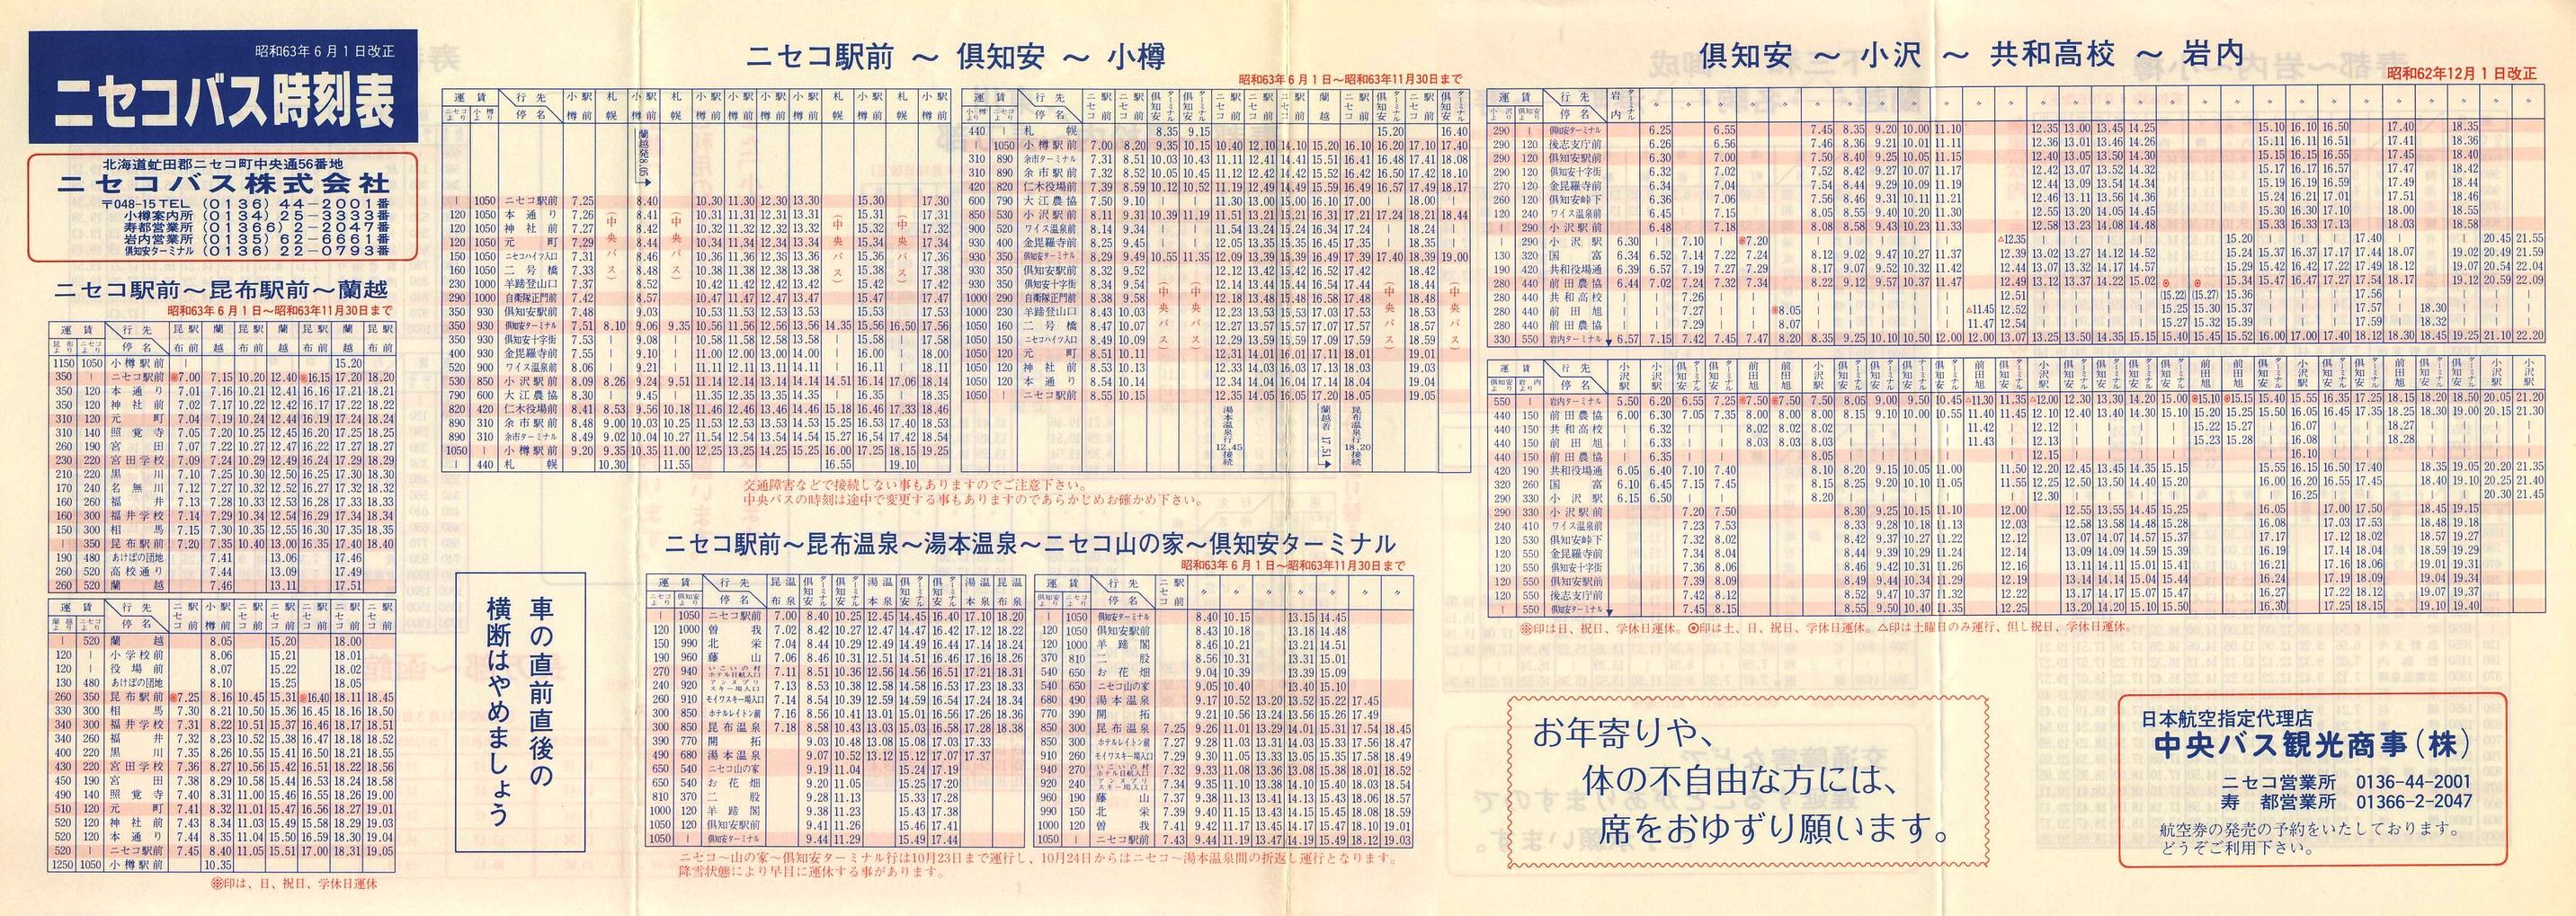 1988-06-01改正_ニセコバス_時刻表表面